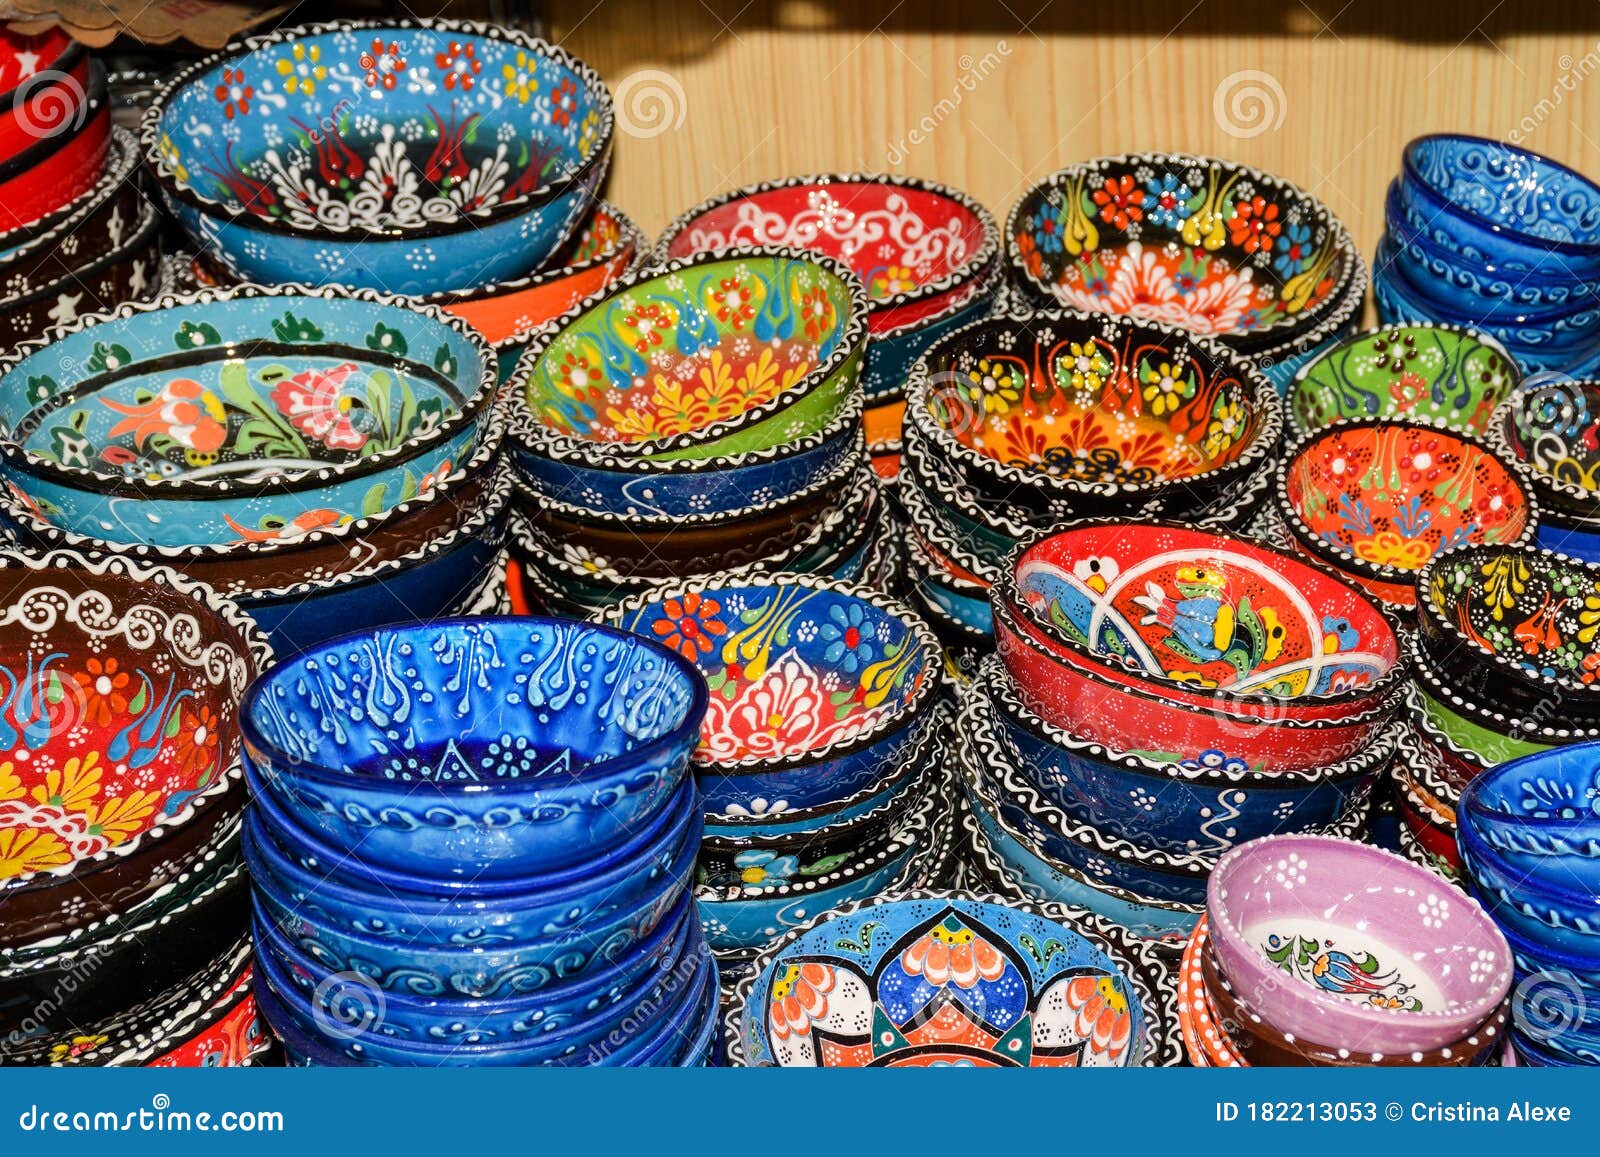 Ciotole Di Ceramica Colorate Orientali in Vendita Sul Grande Bazar Di  Istanbul Turkey Tureens in Chiusura Del Mercato Artigianale. Fotografia  Stock Editoriale - Immagine di orientale, bazar: 182213053